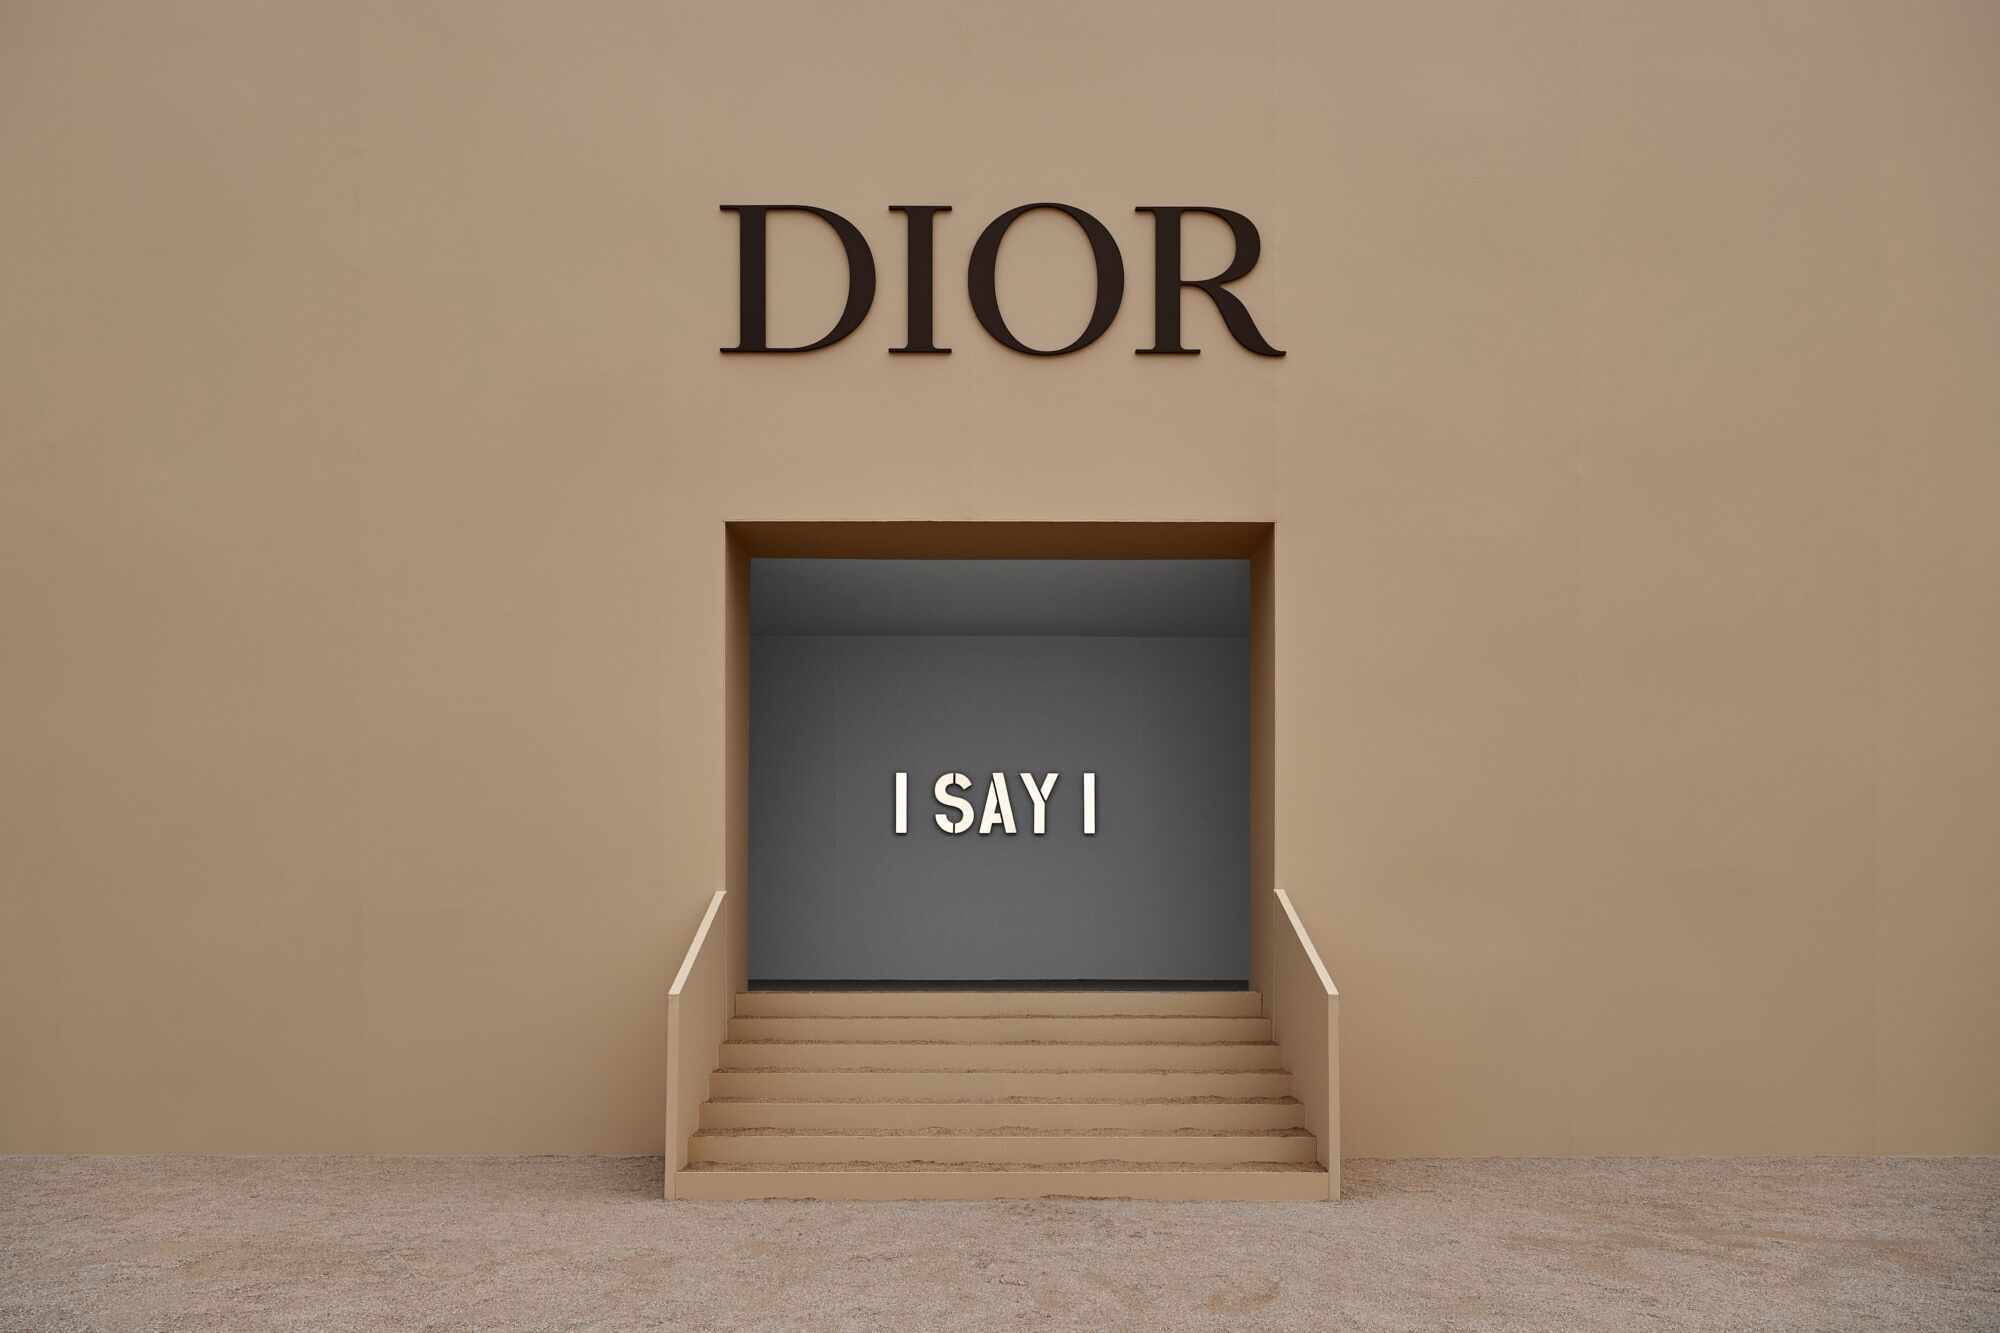 Dior Fall Winter 2020/21